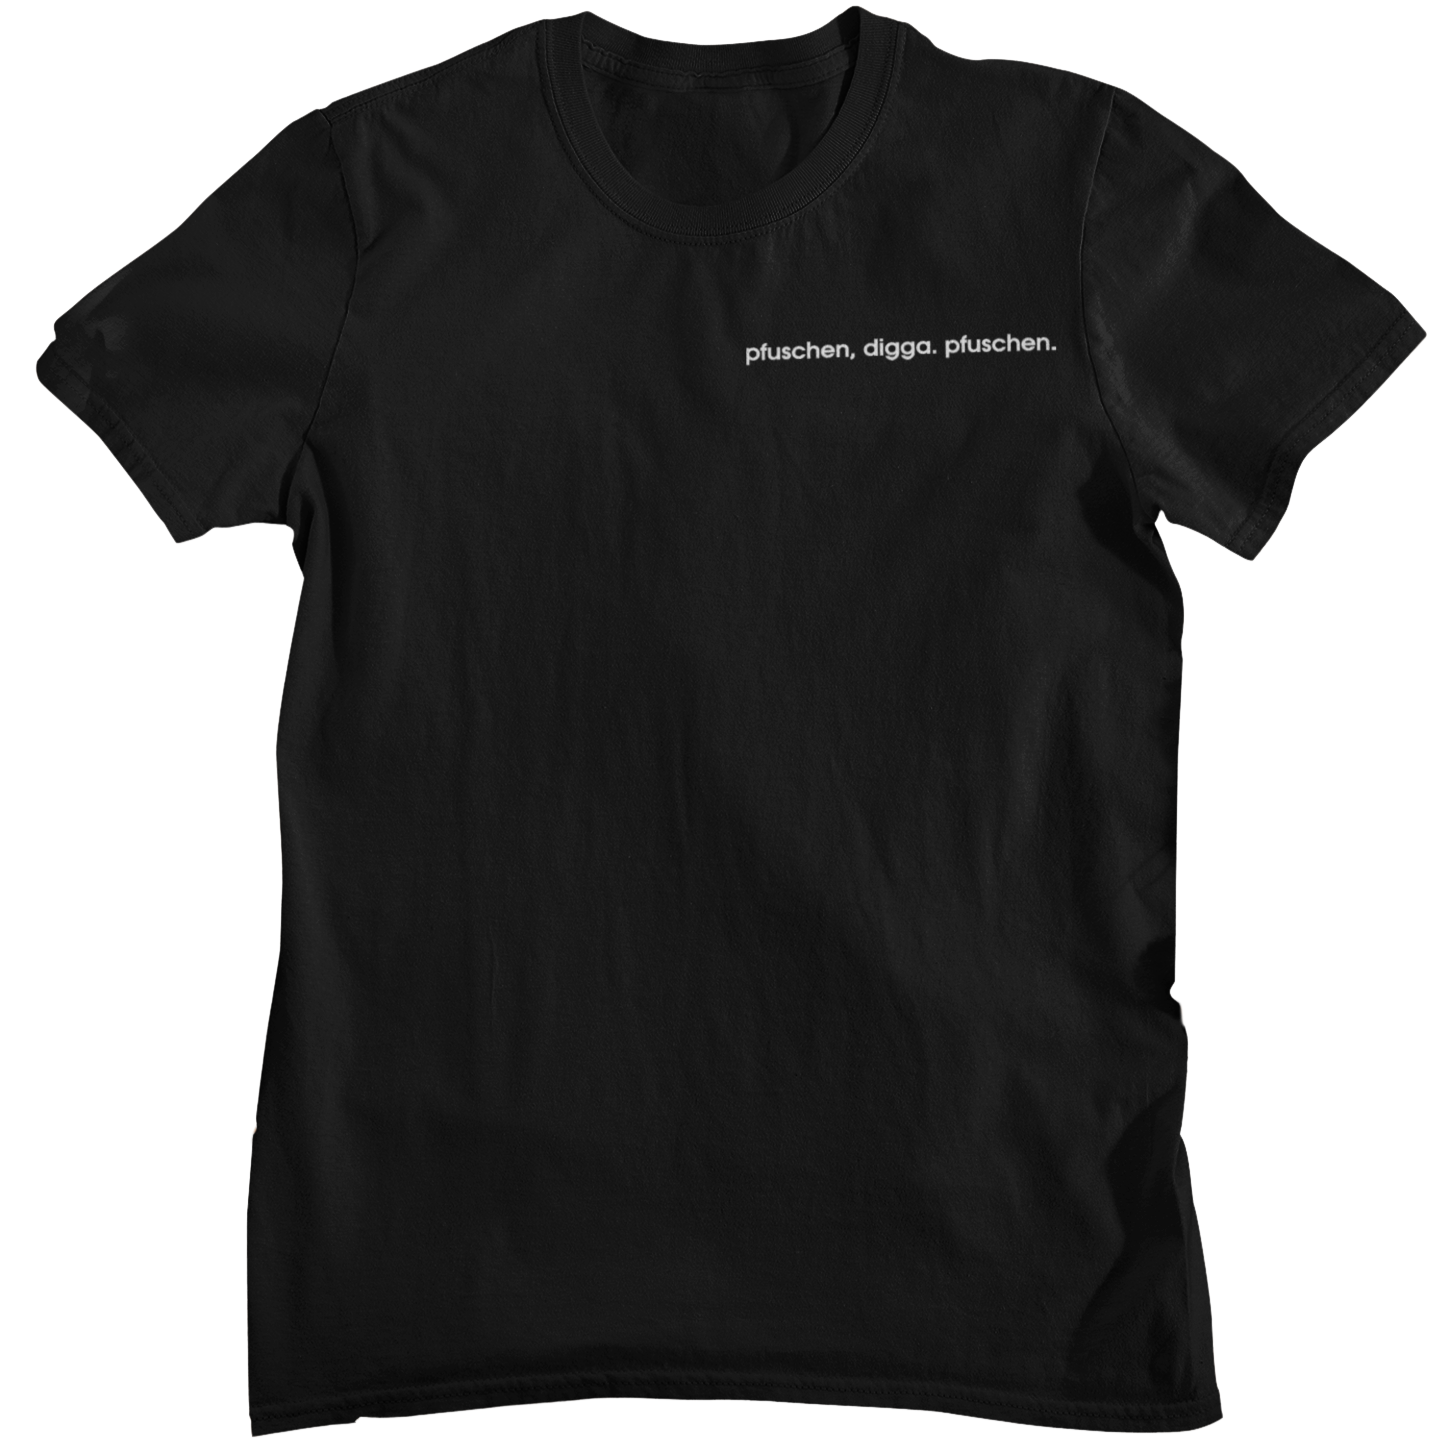 Pfuschen Digga Pfuschen - Unisex Shirt